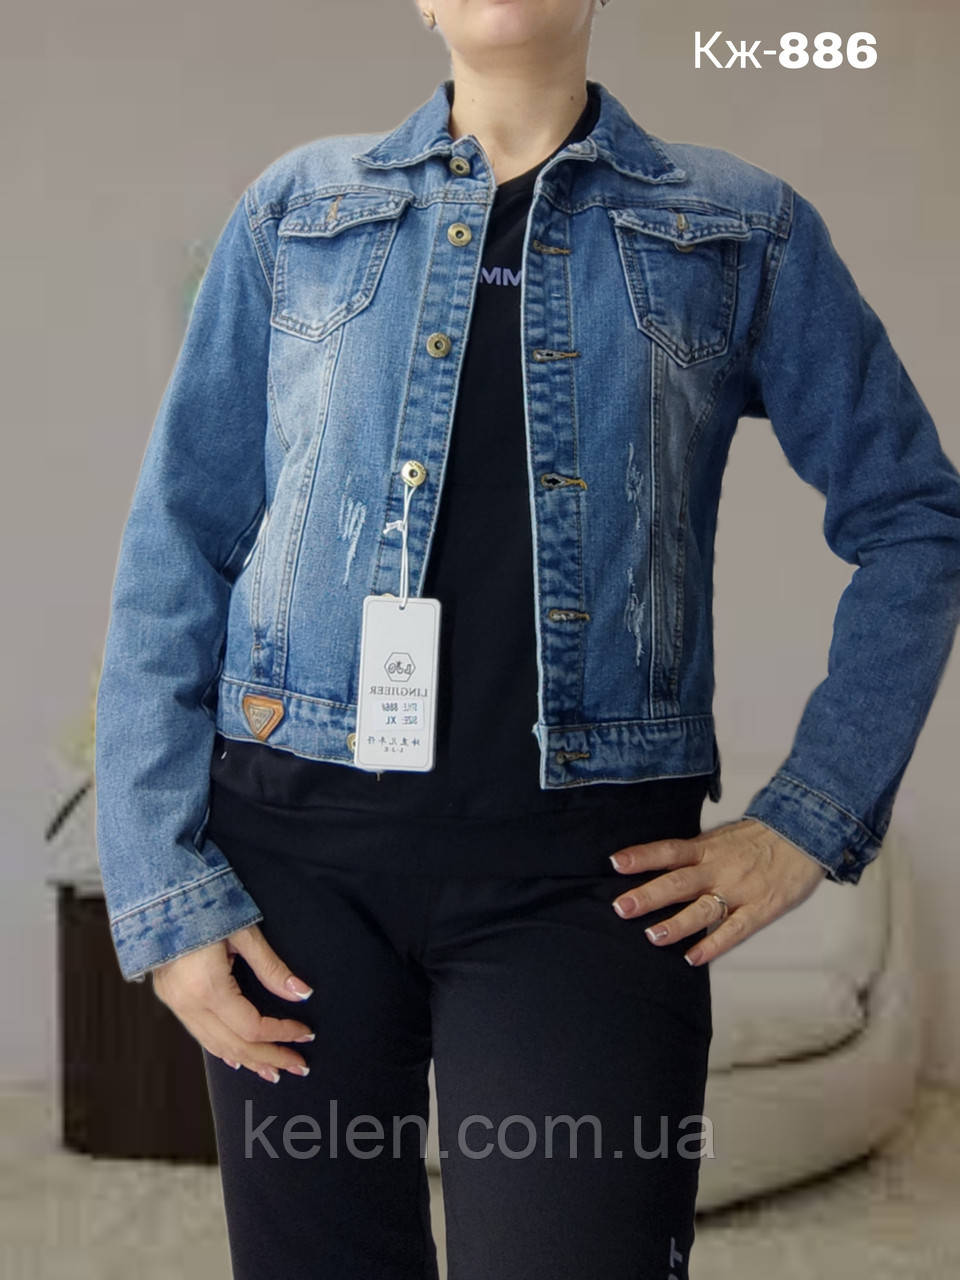 Джинсова куртка без капюшона коротка молодіжна розміри  M (42)       L  (44)      XL (46) маломірна